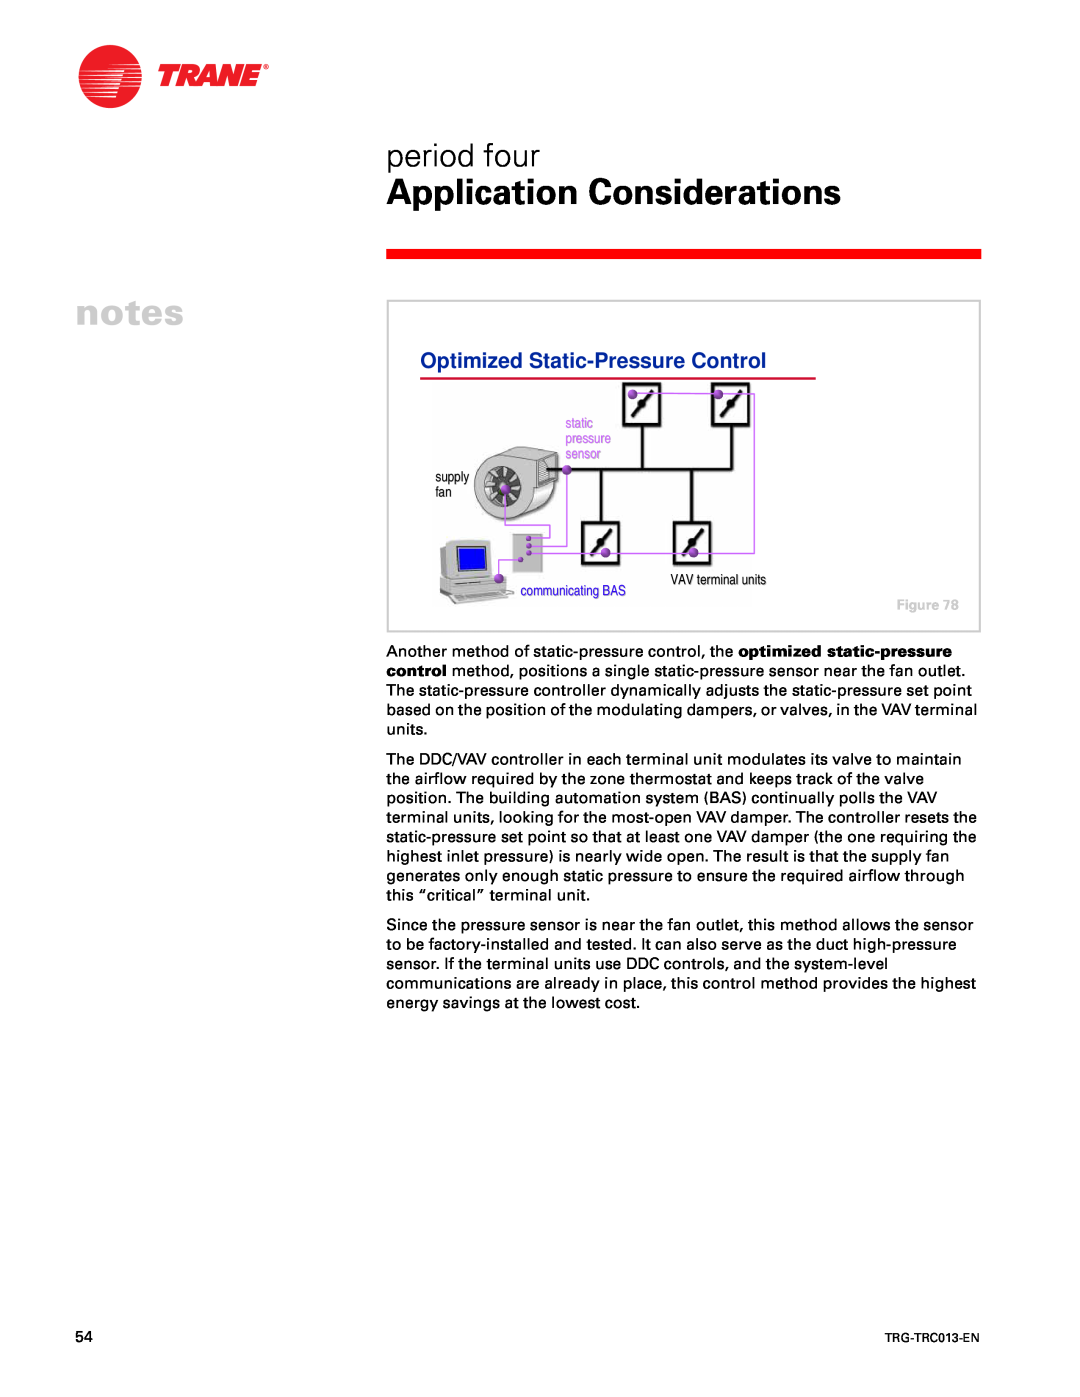 Trane TRG-TRC013-EN manual Optimized Static-PressureControl 